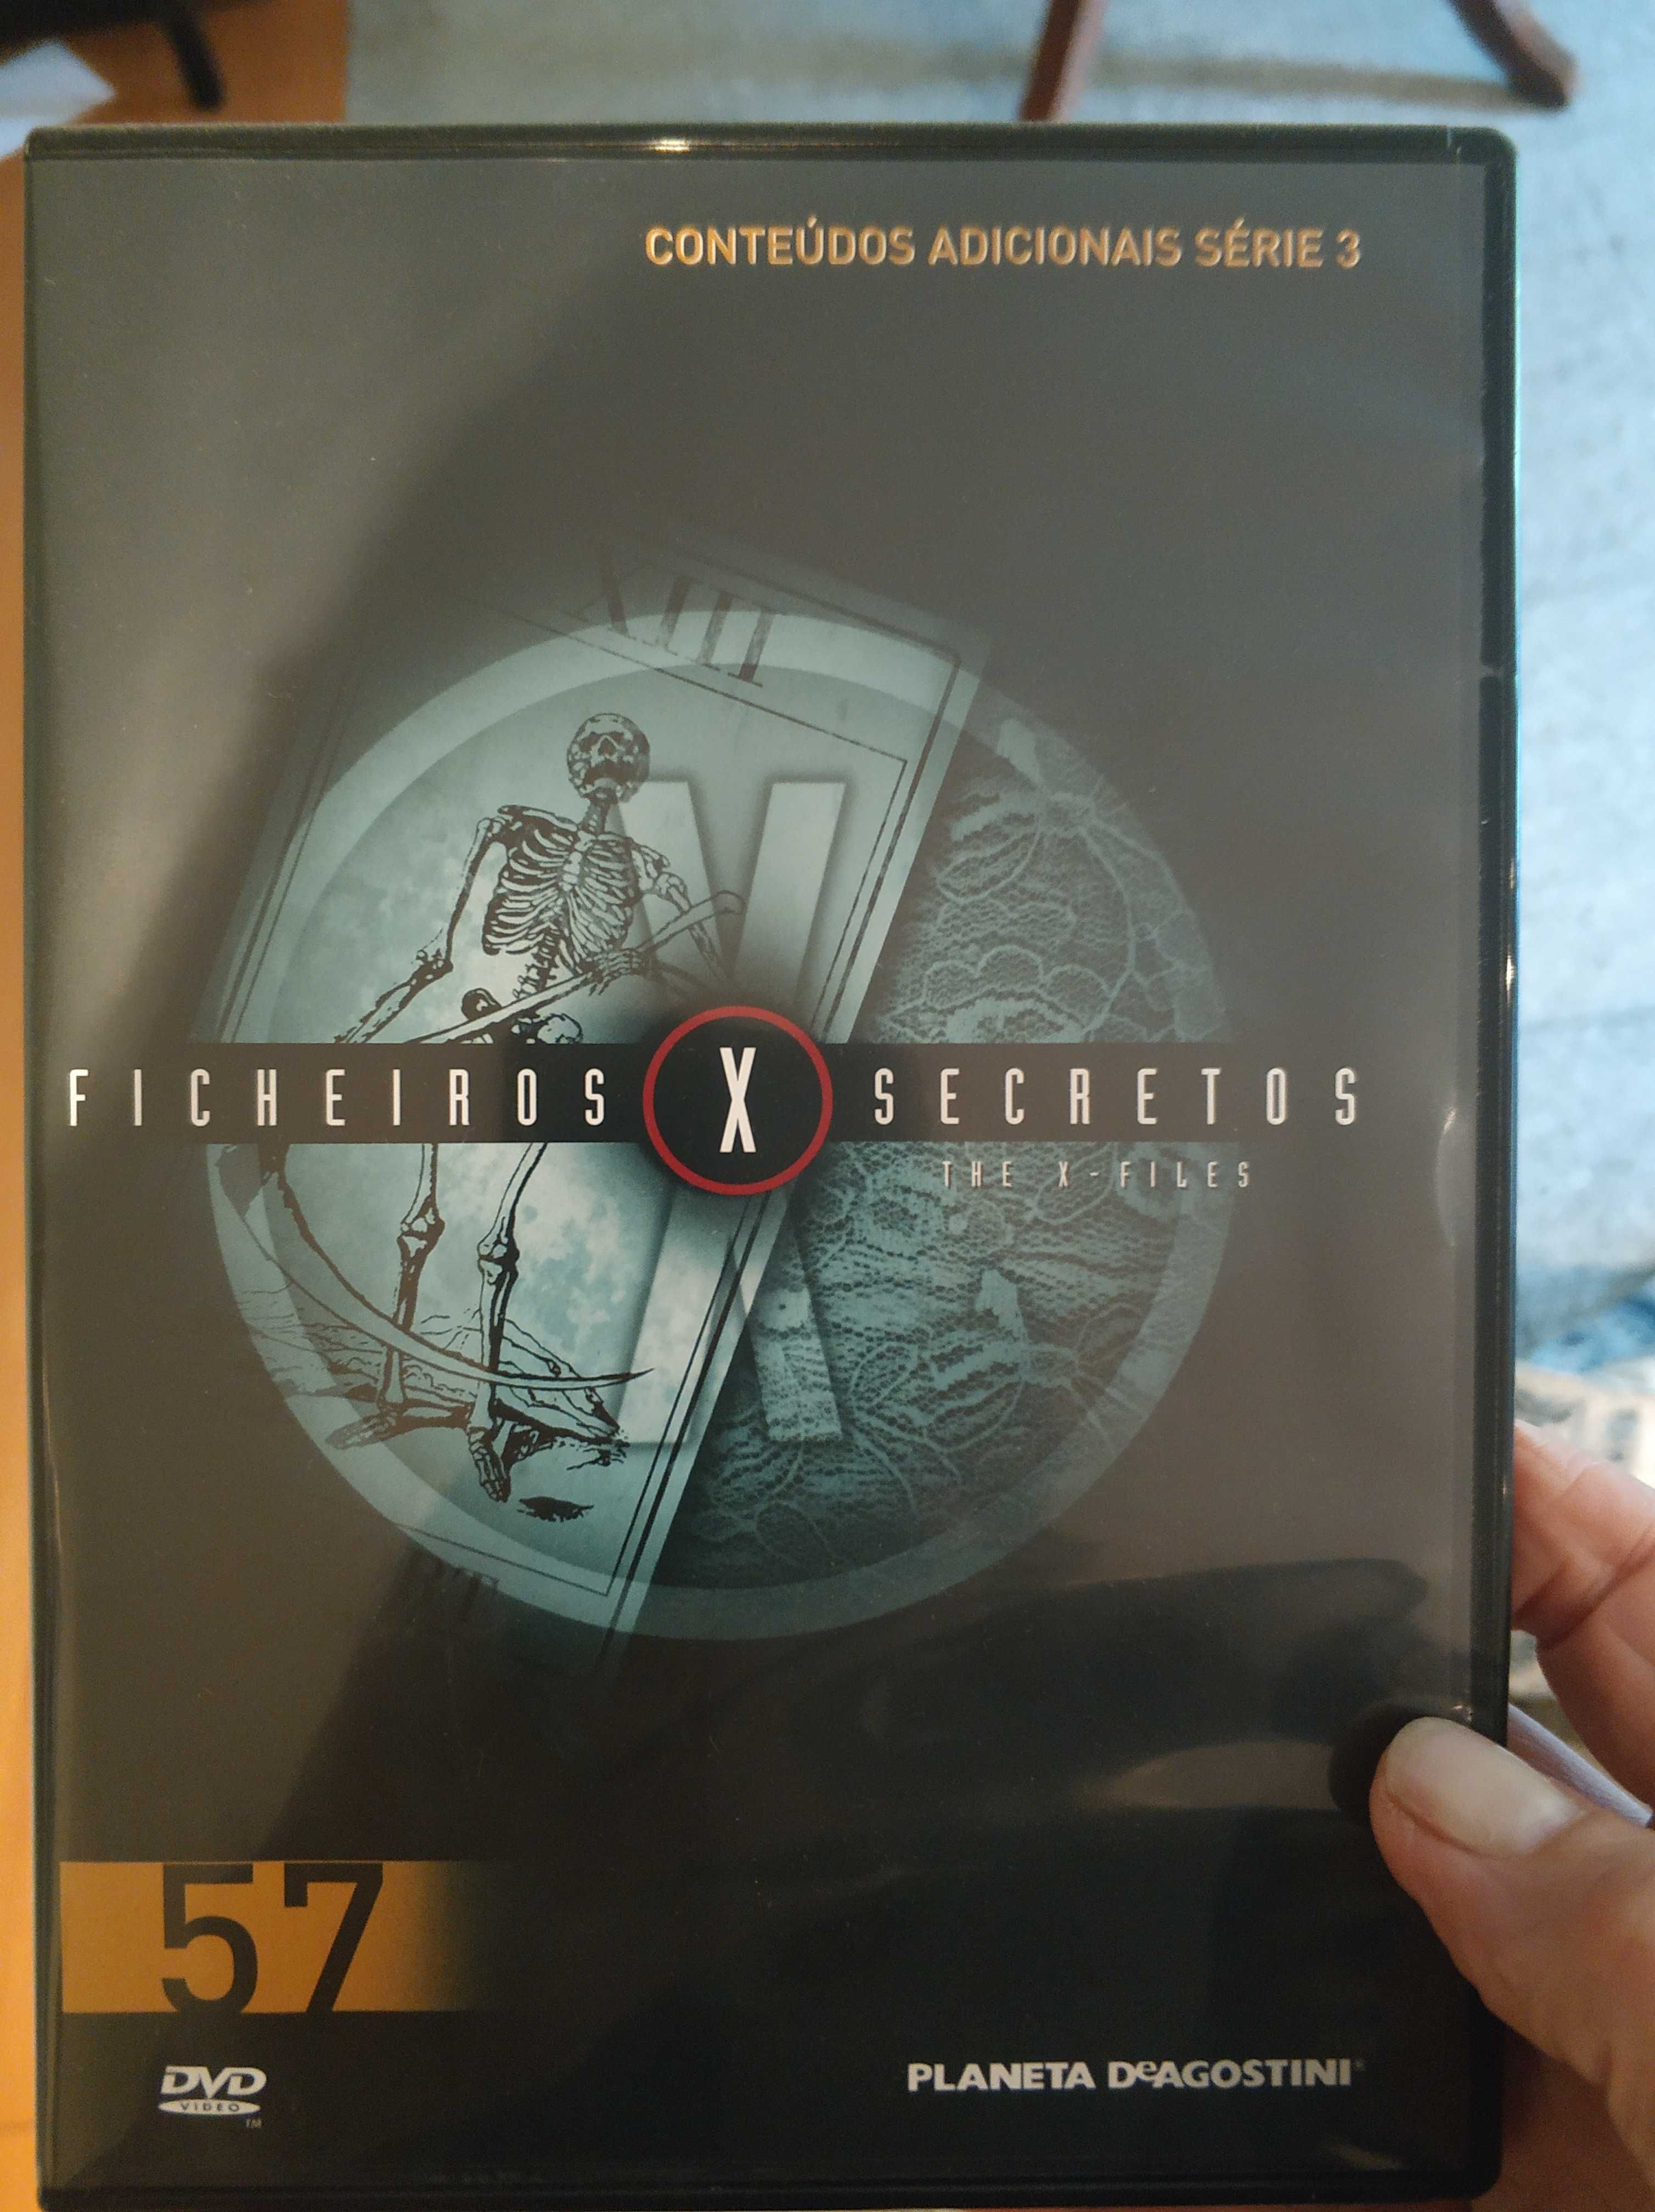 60 DVD Ficheiros Secretos, Agostini